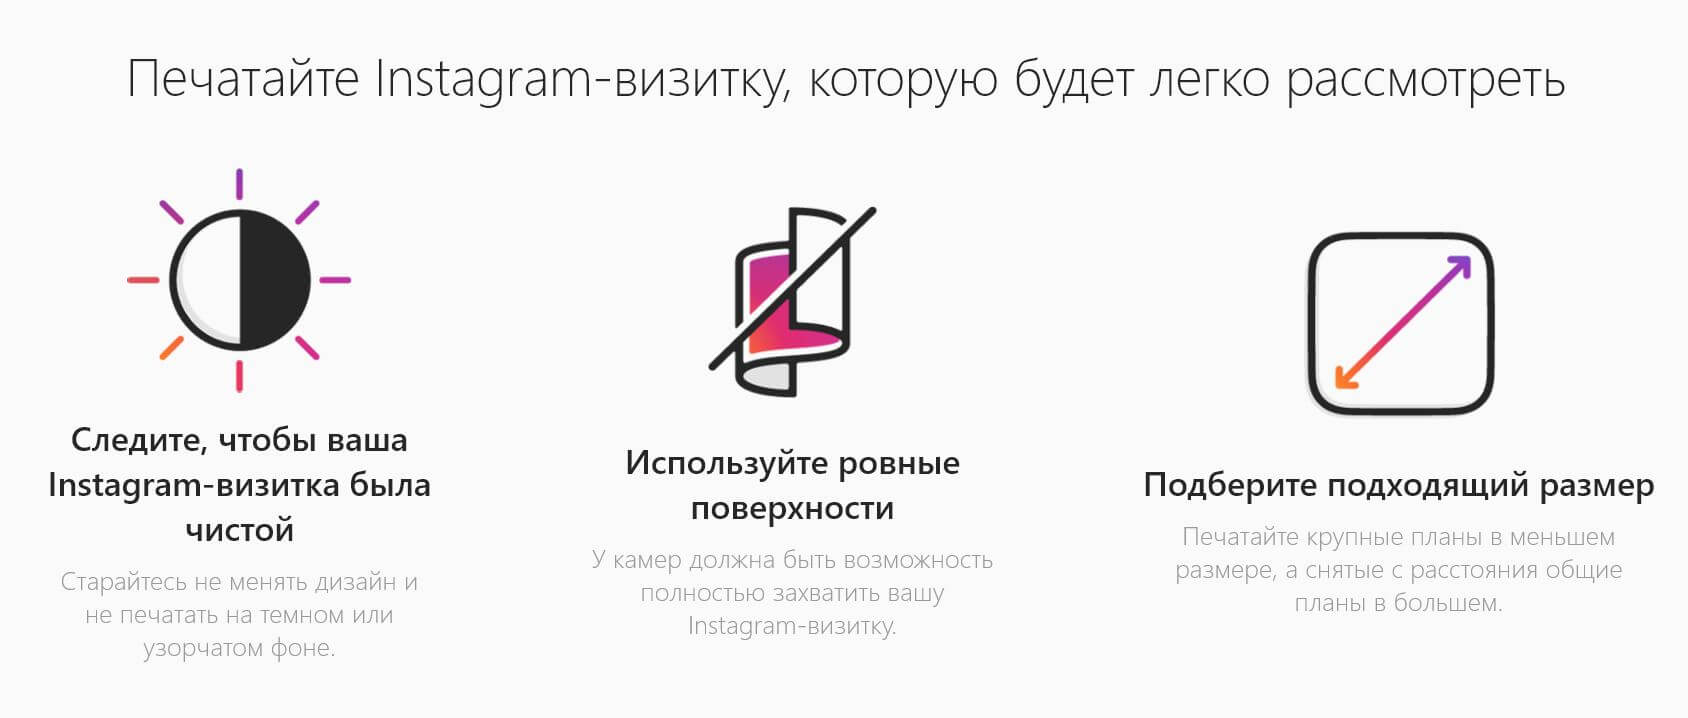 Що таке візитка Instagram: нова функція, навіщо потрібна, значок, як її зробити, написати адресу, | Nametag Instagram